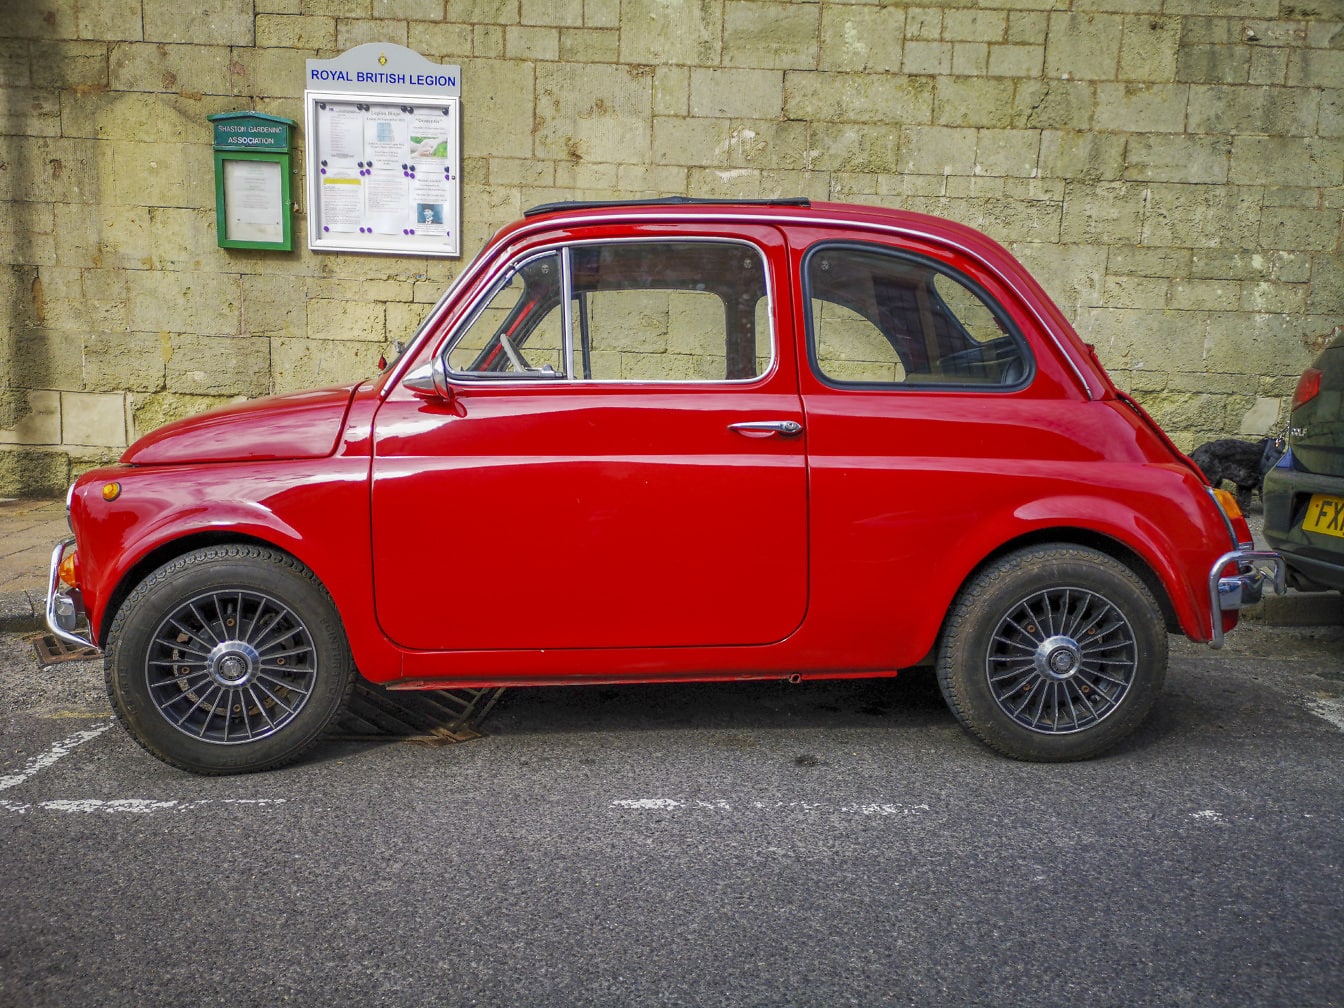 Fiat Nuova 500 темно-червоний металевий старожил на парковці